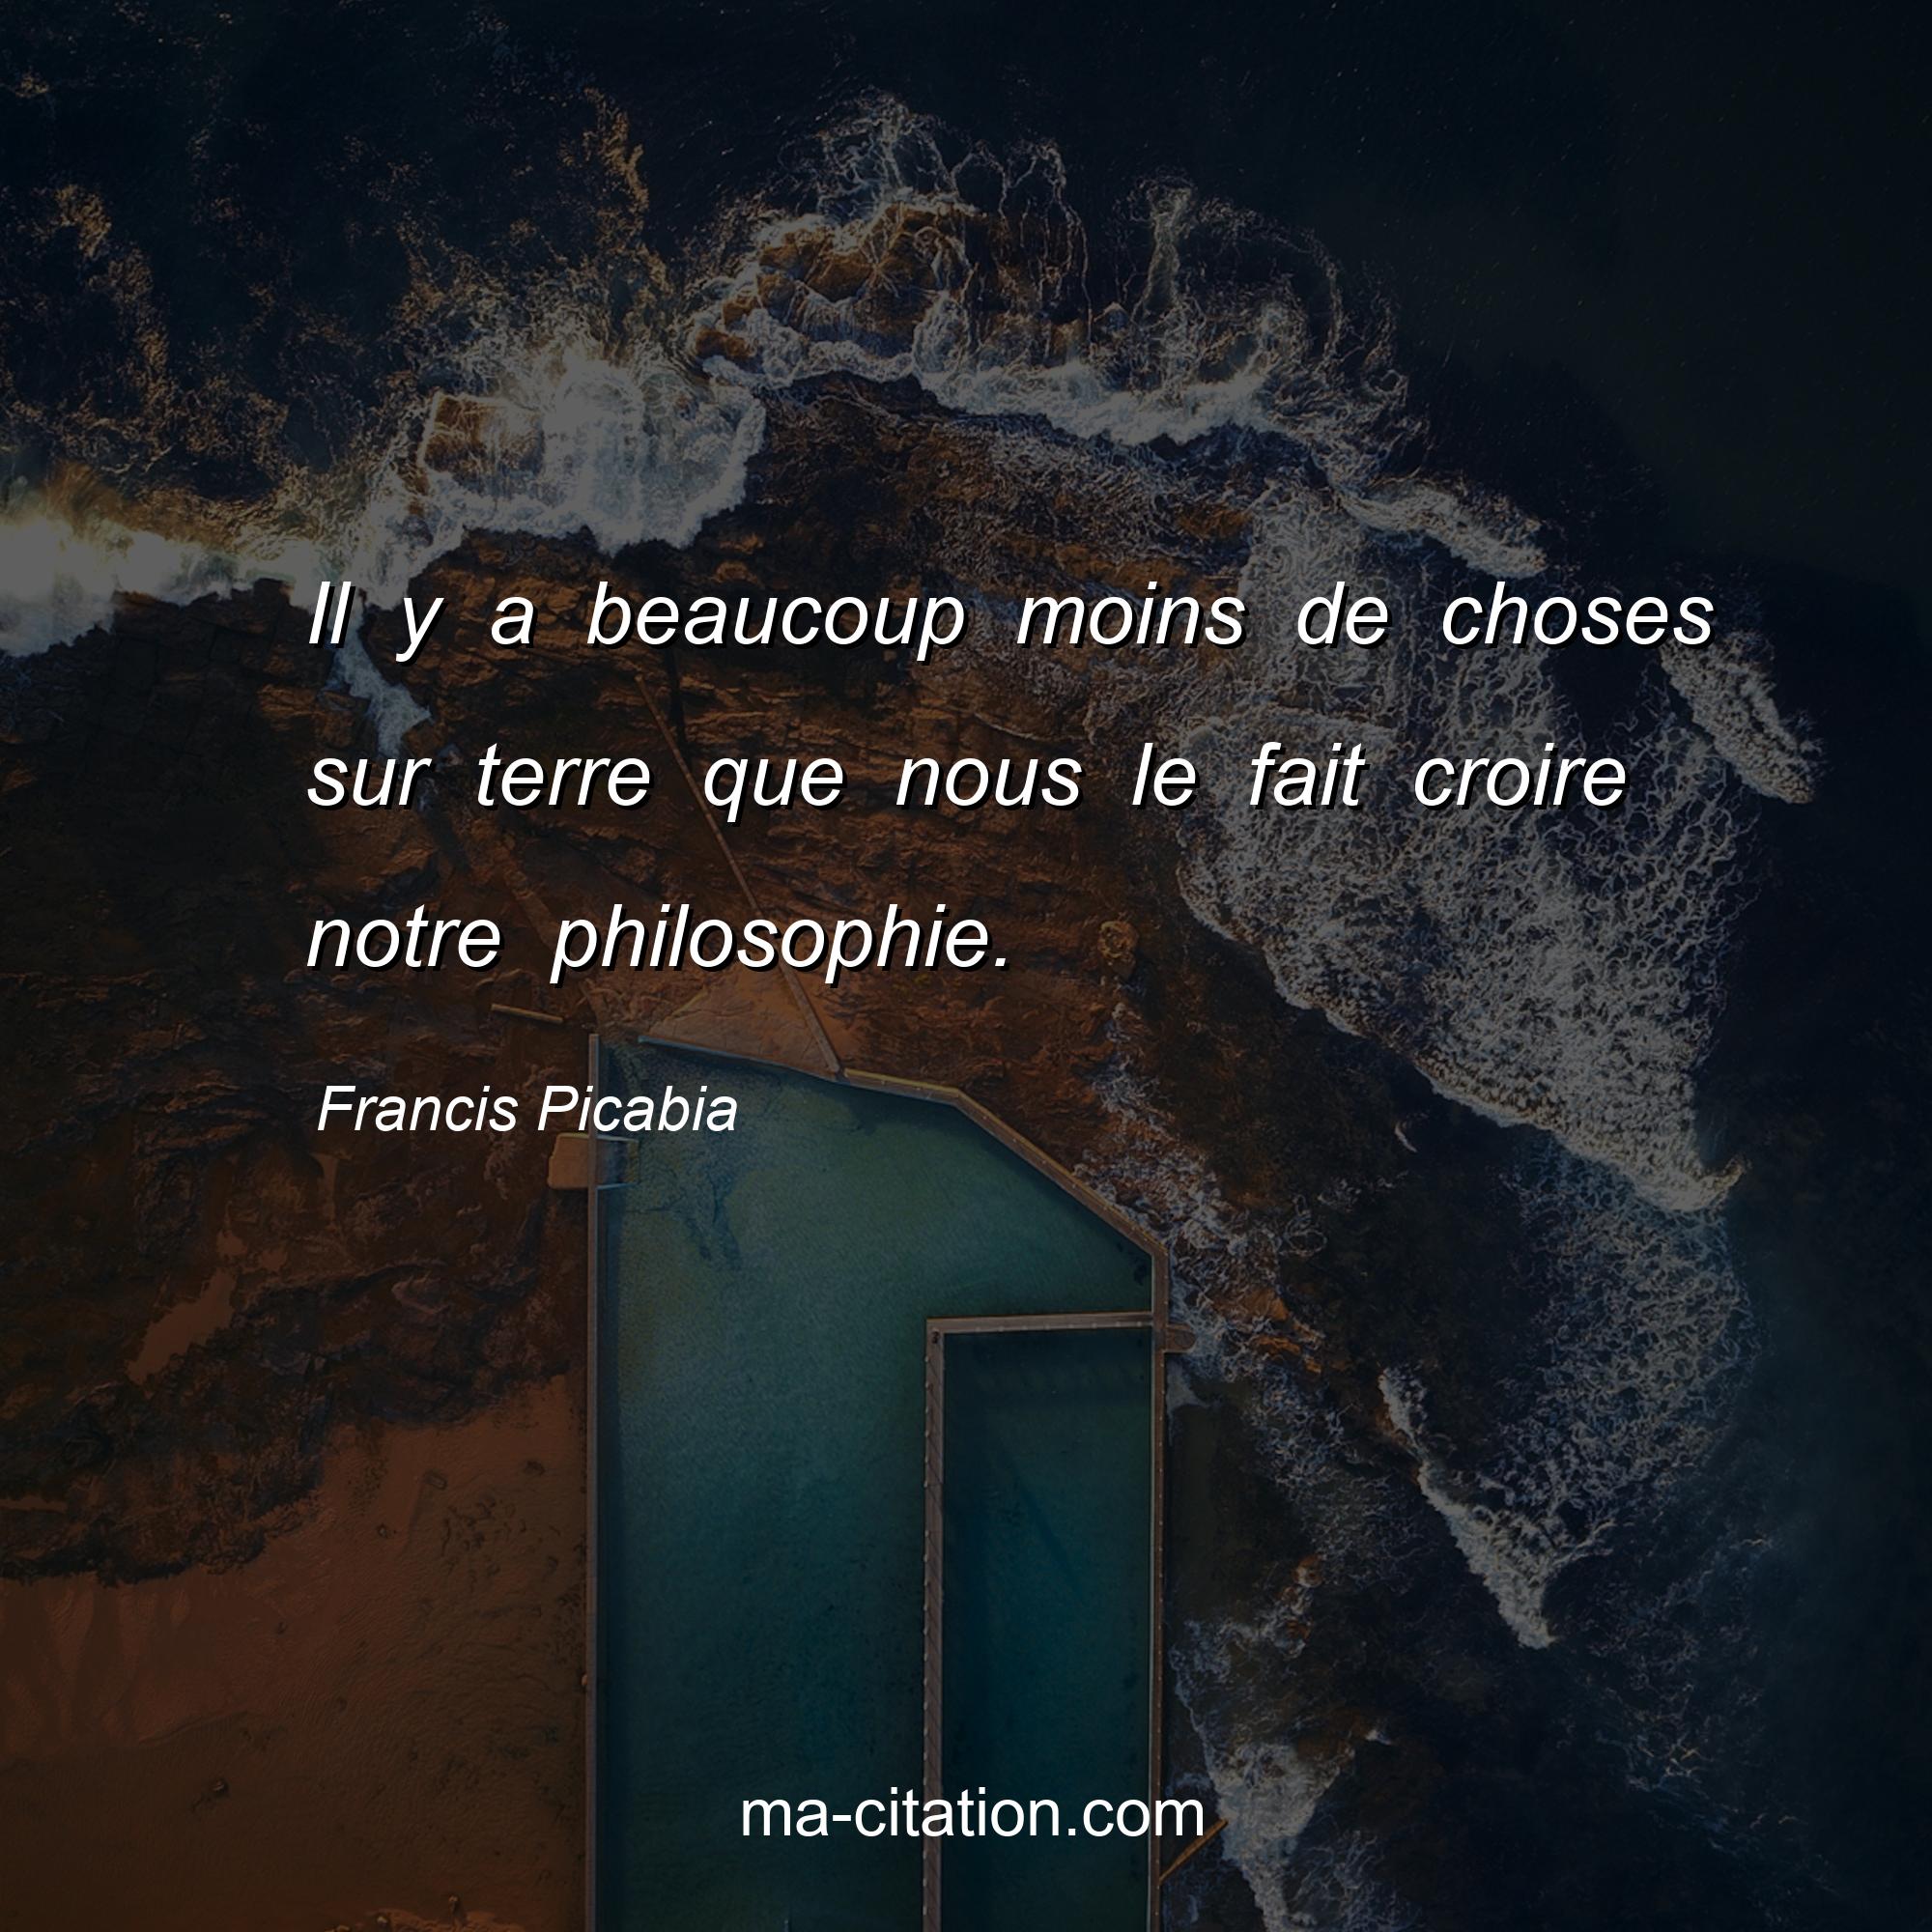 Francis Picabia : Il y a beaucoup moins de choses sur terre que nous le fait croire notre philosophie.